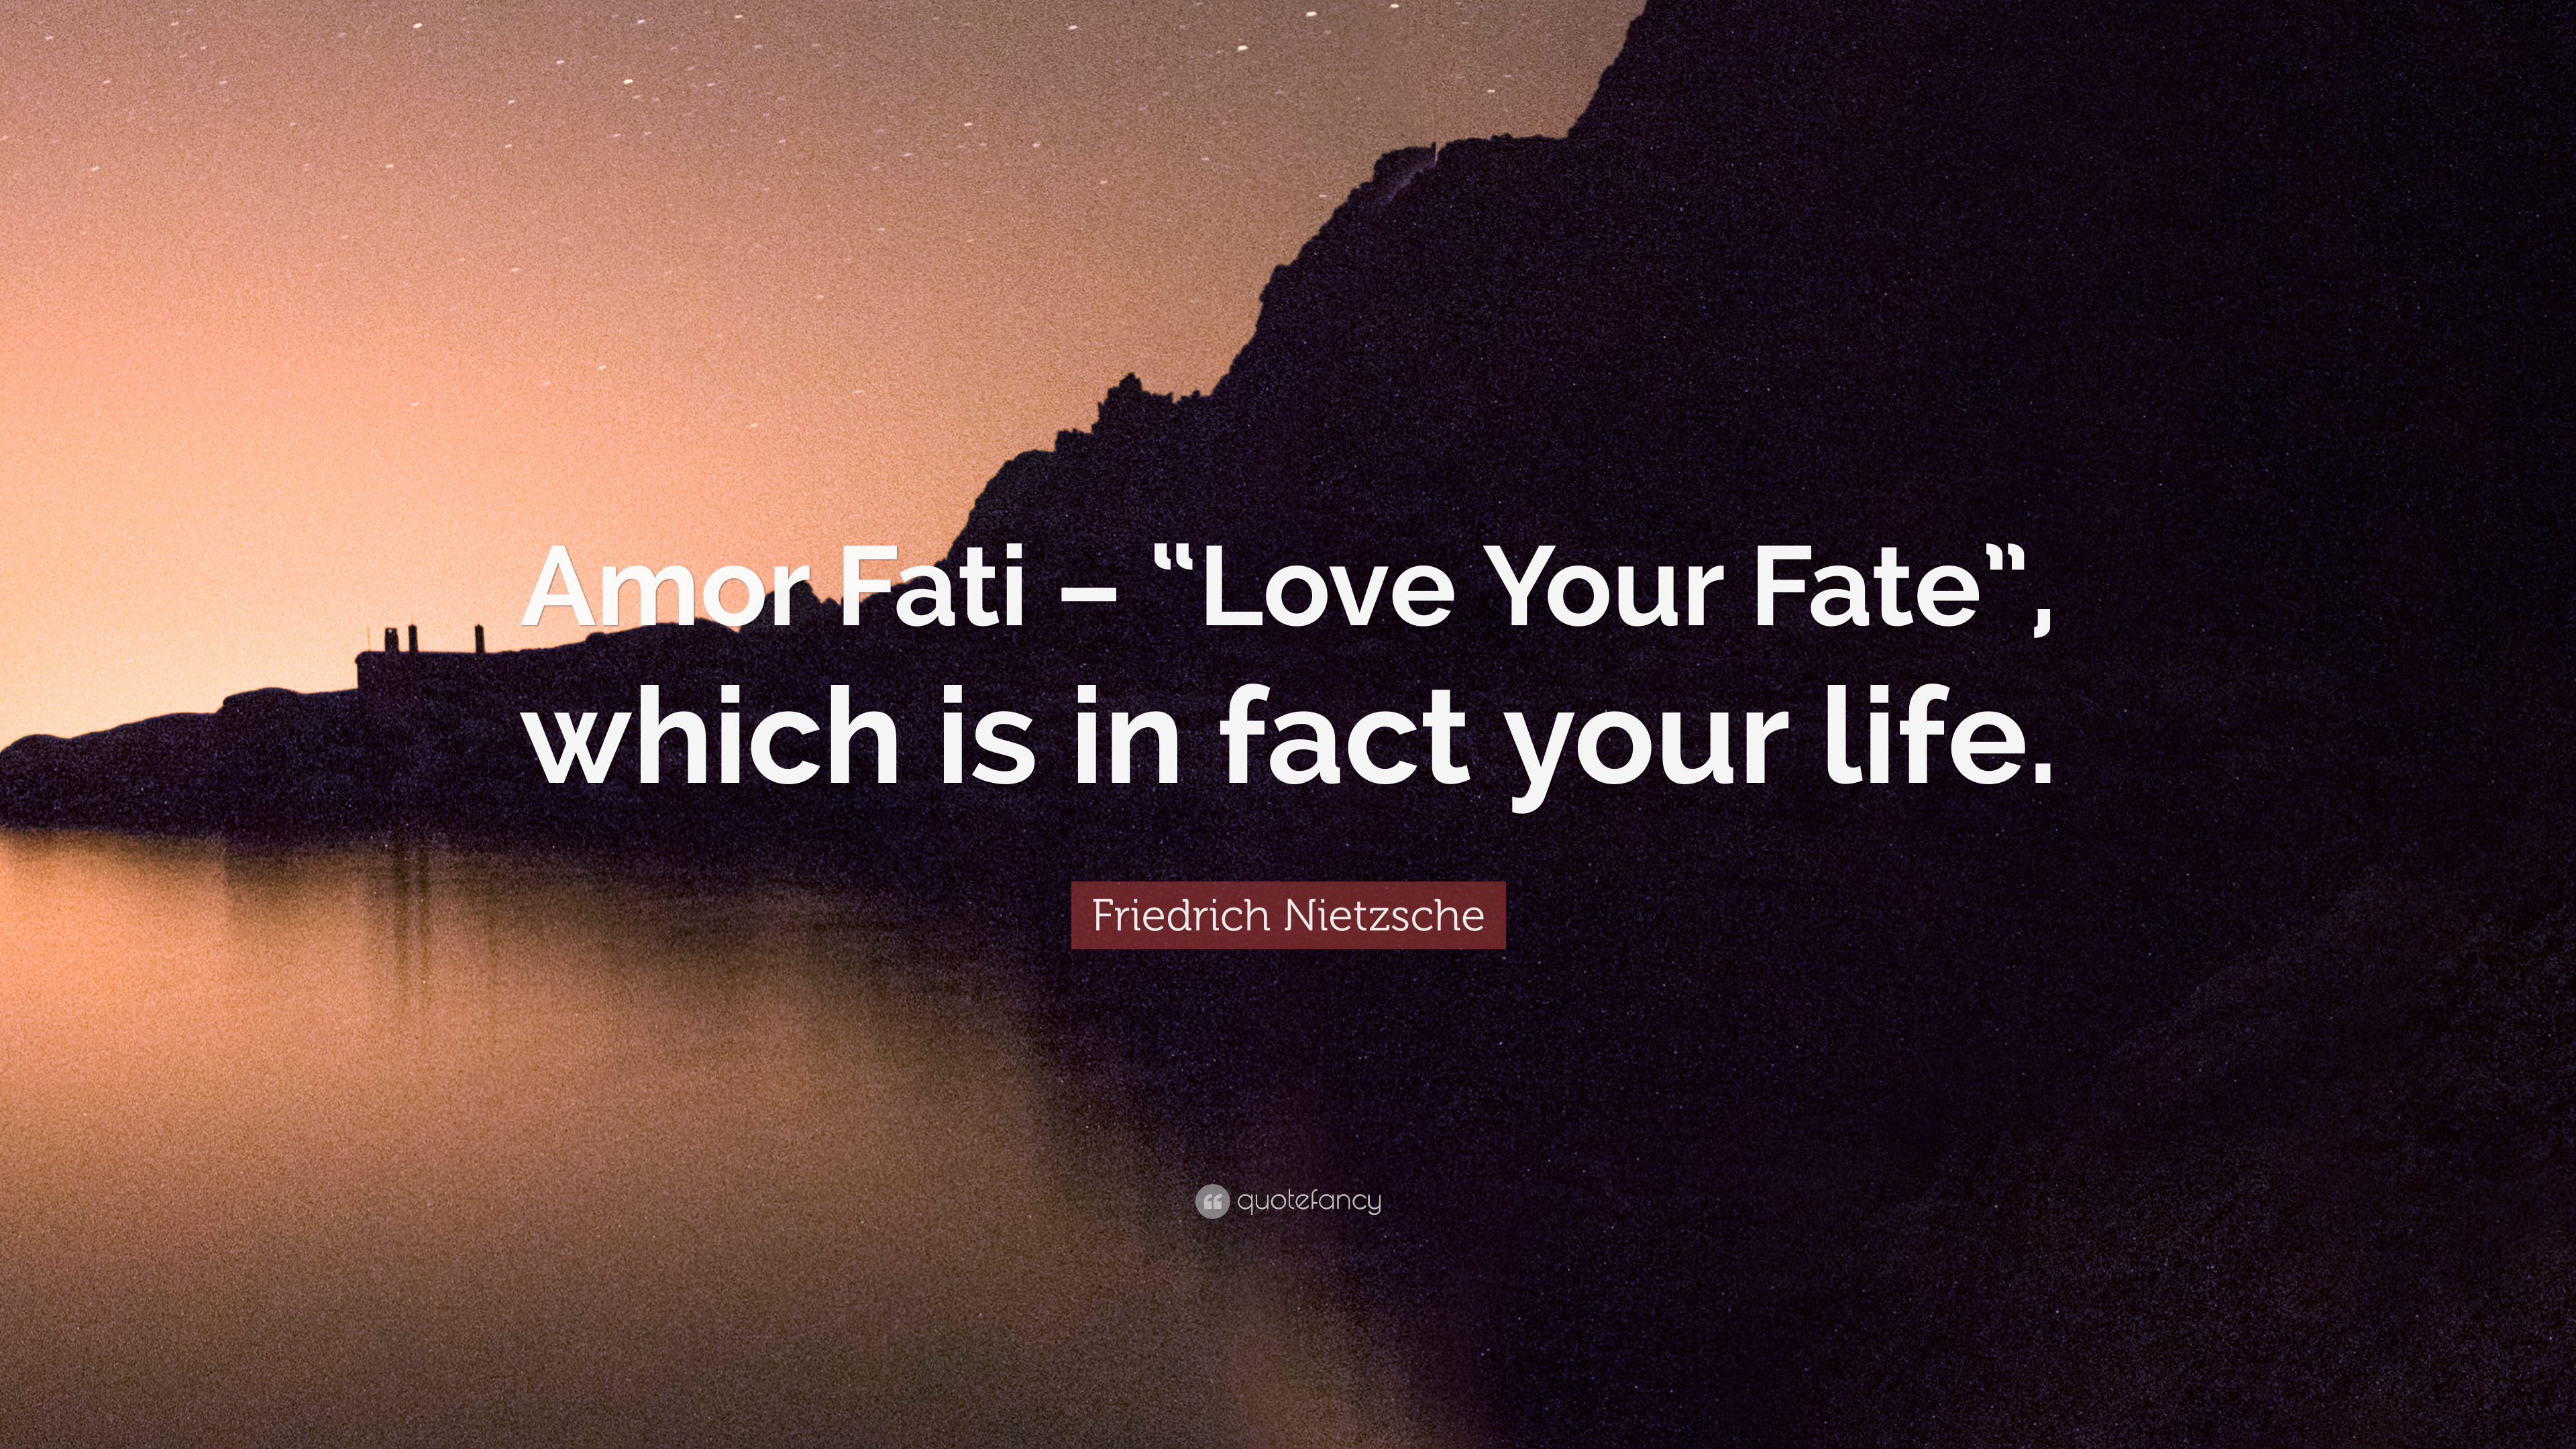 Friedrich Nietzsche Quote: "Amor Fati - "Love Your Fate", wh...